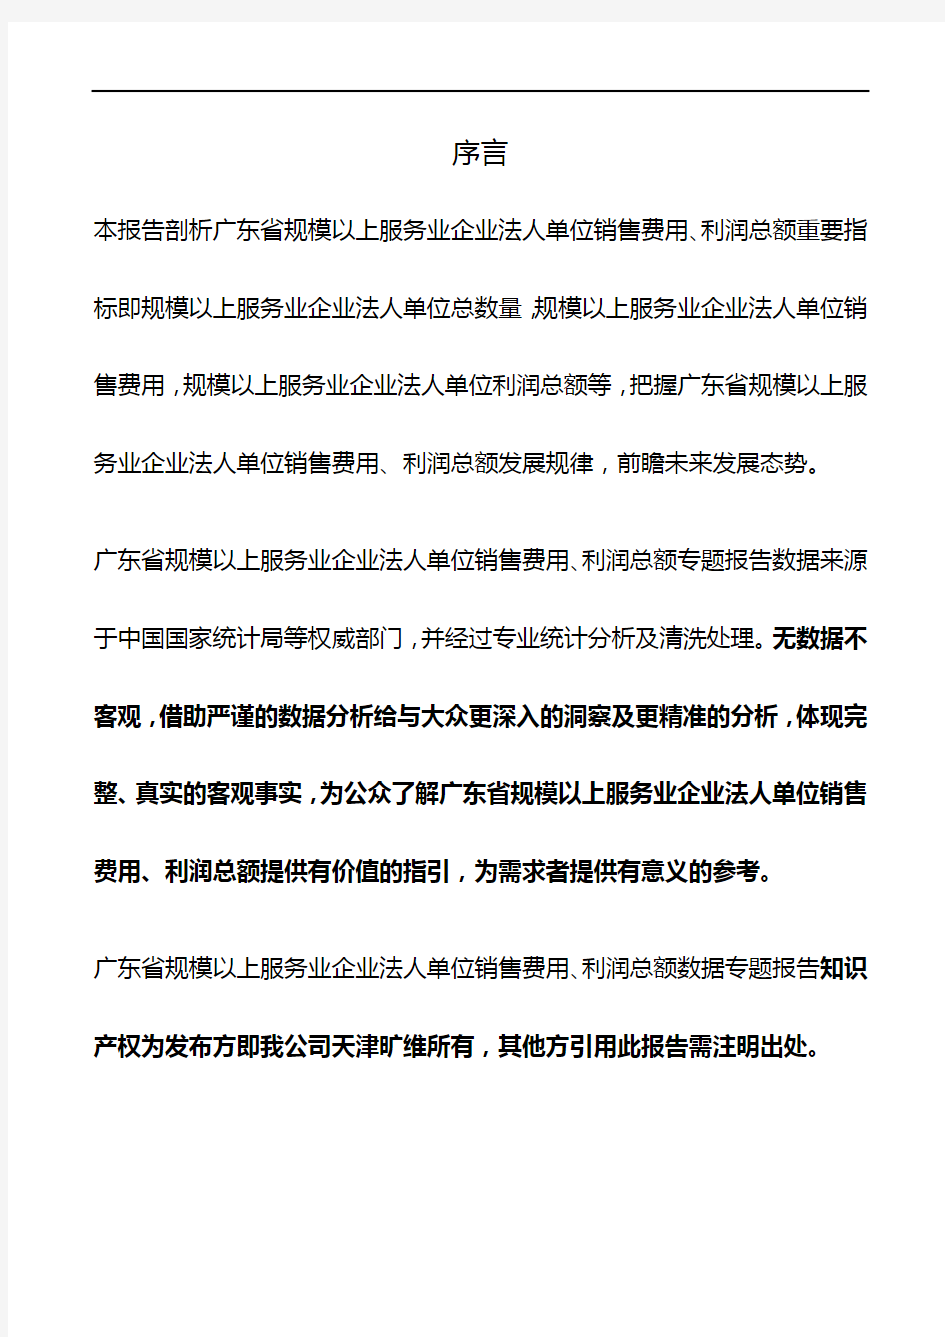 广东省规模以上服务业企业法人单位销售费用、利润总额3年数据专题报告2019版